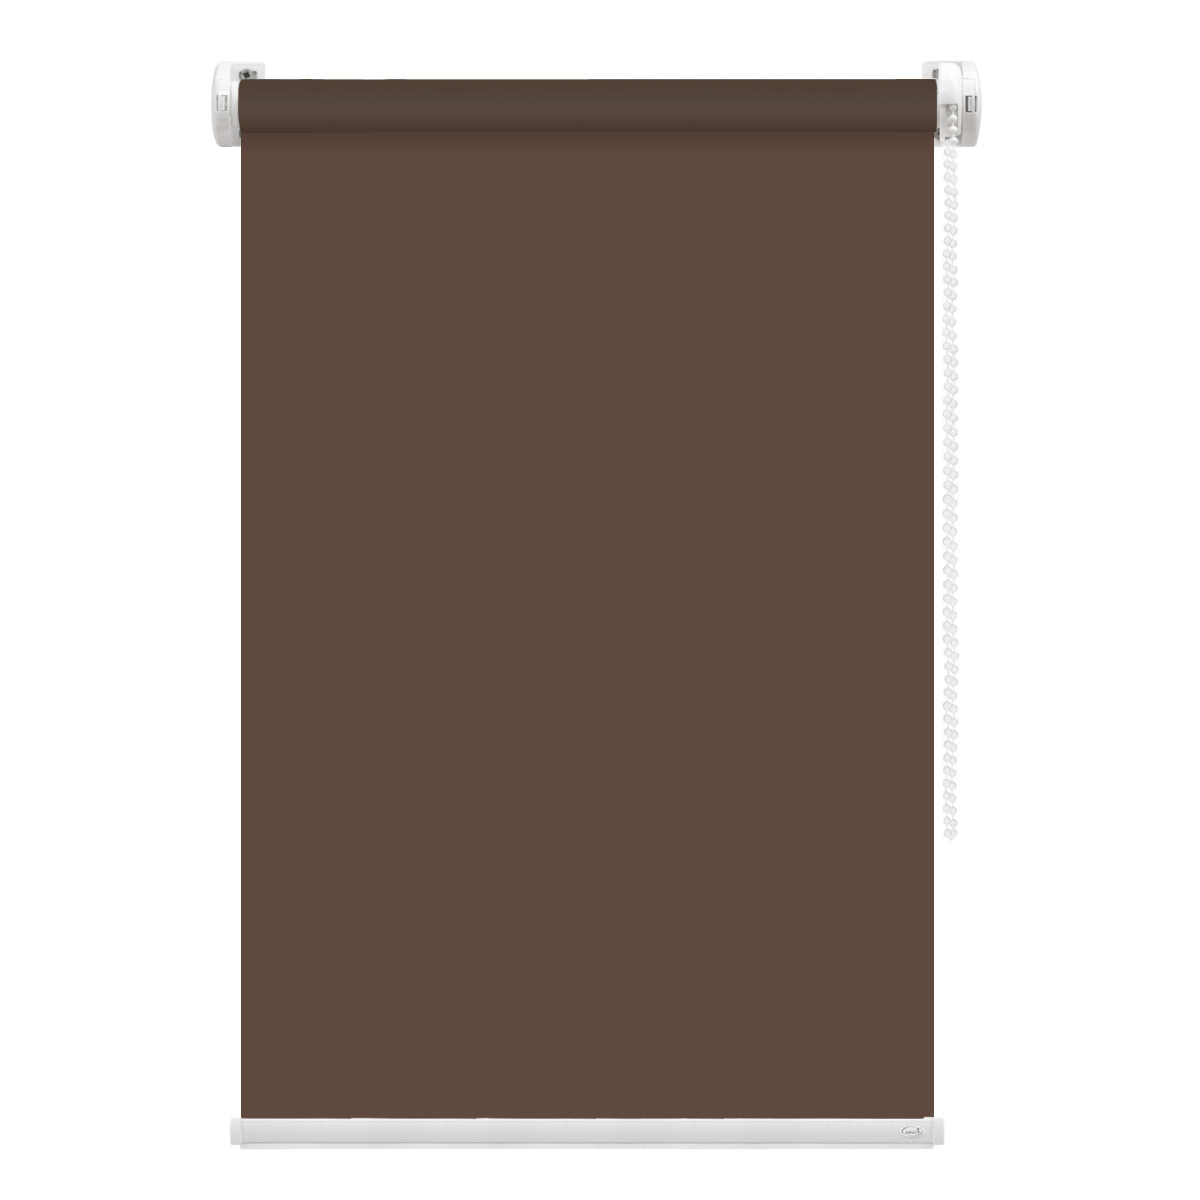 Рулонная штора FixLine Amigo Basic коричневая 70х160 см рулонная штора fixline amigo basic коричневая 50х160 см